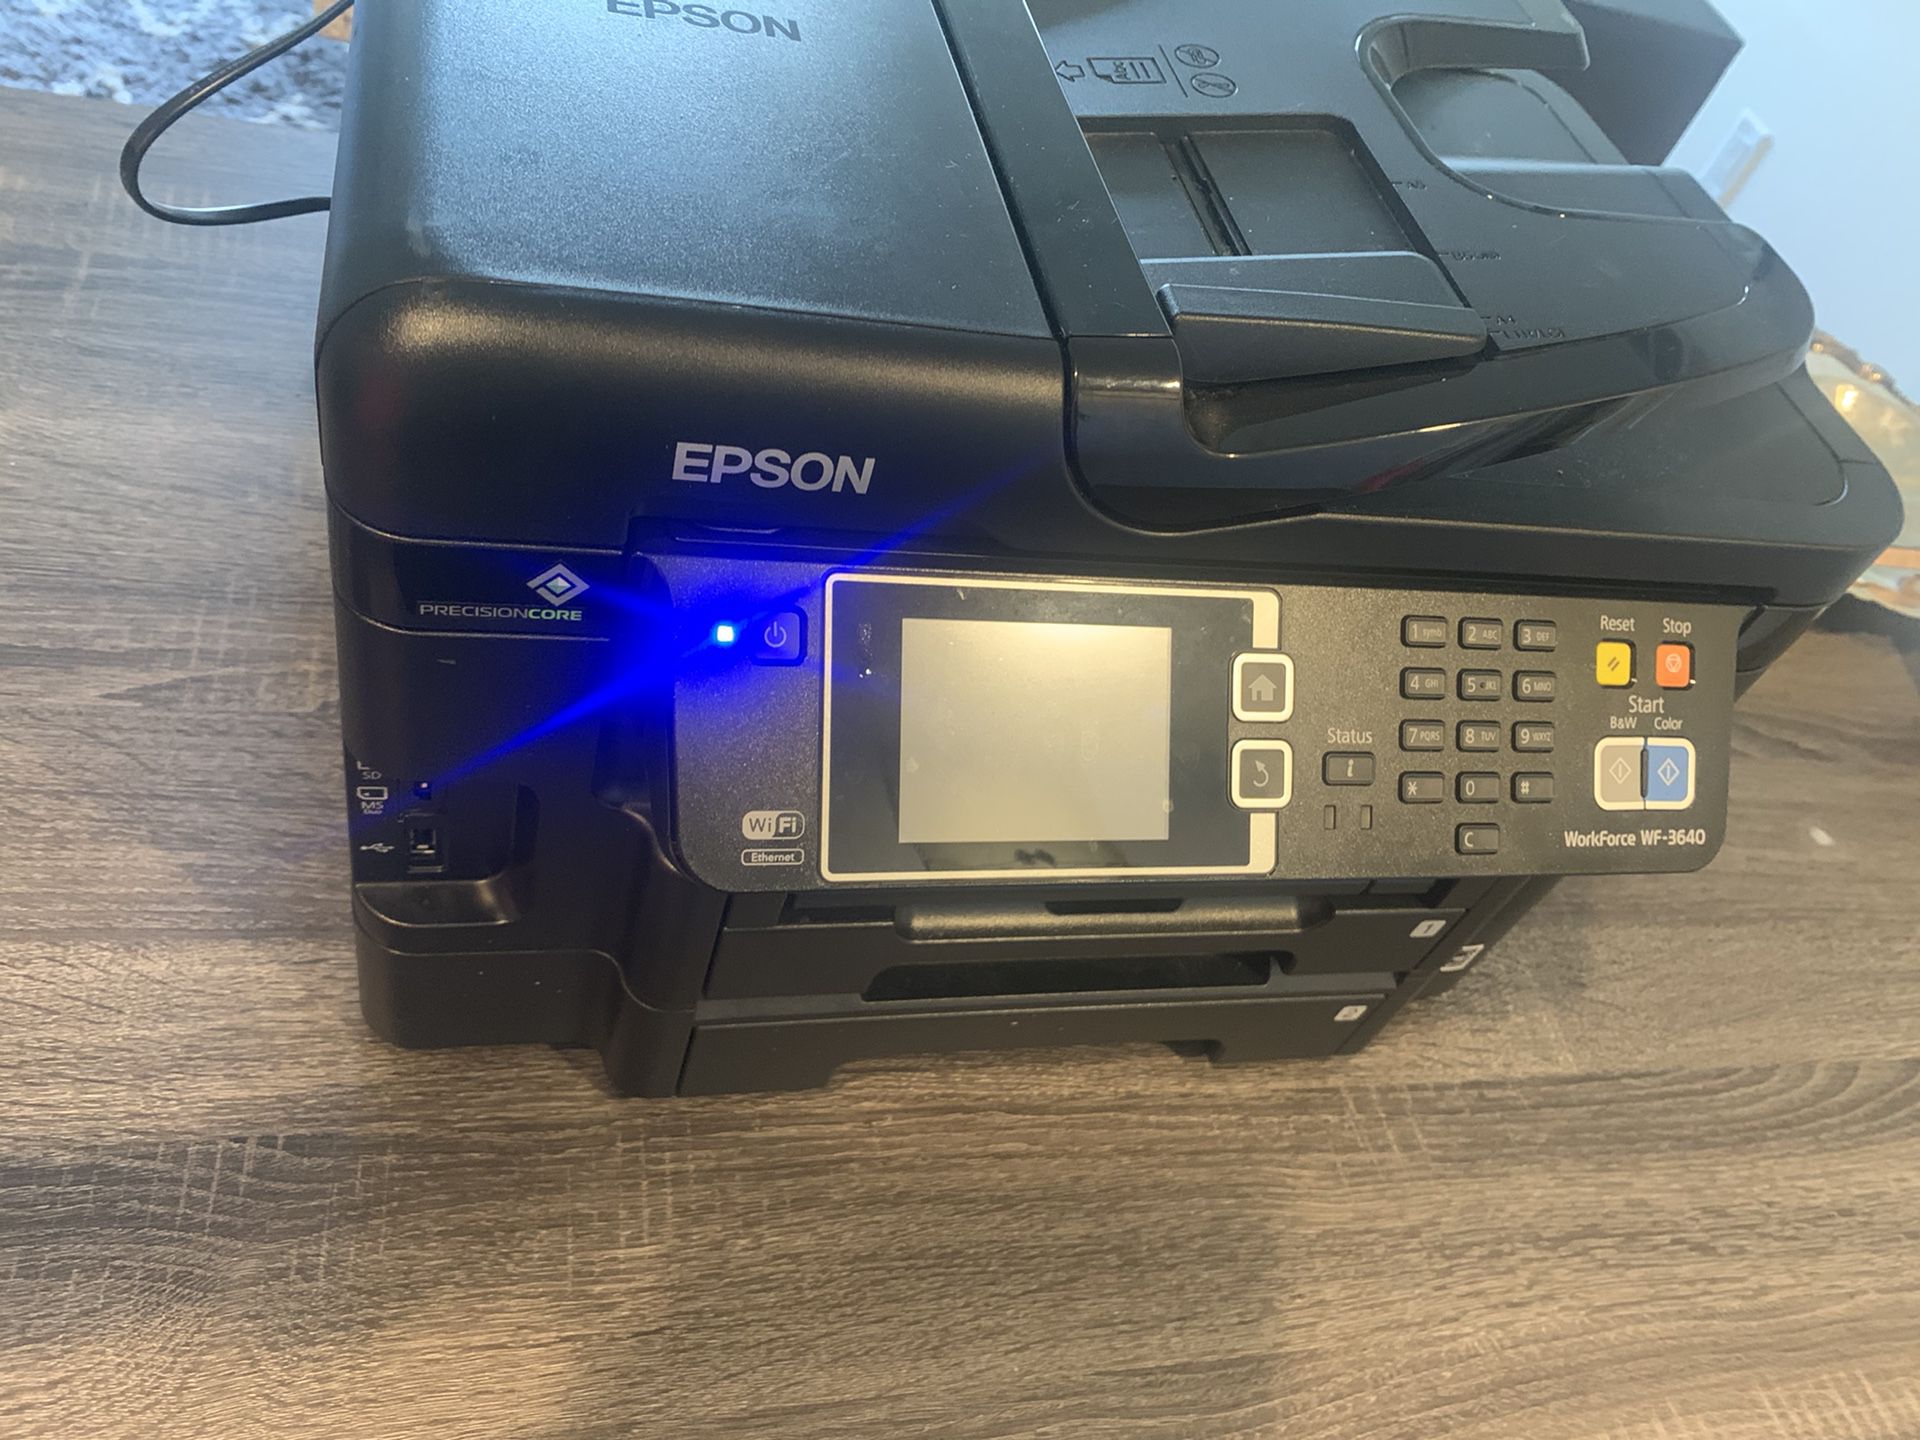 Epson WF/3640 Printer Scanner Copier